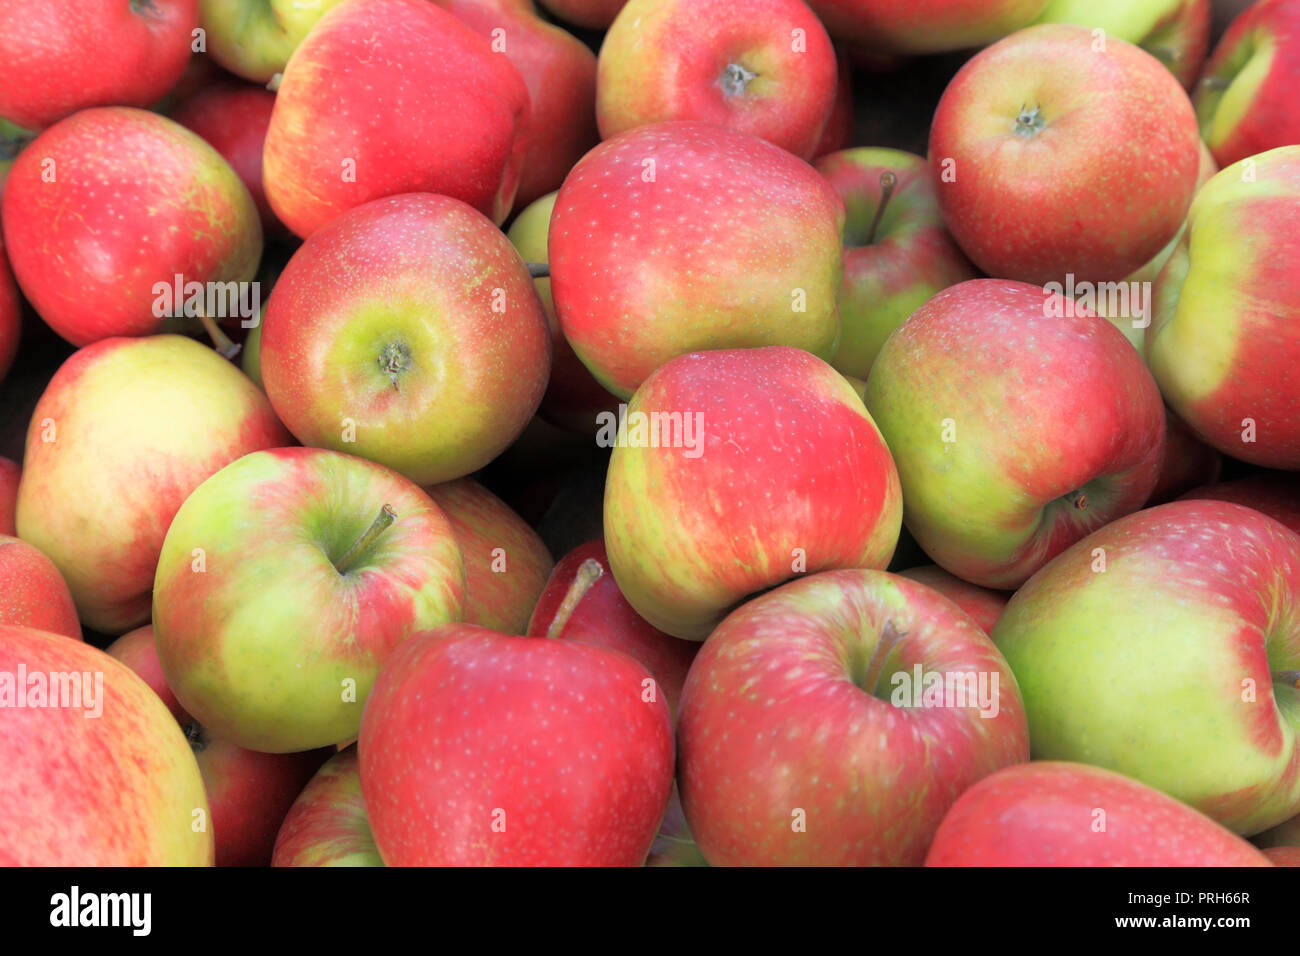 La pomme 'Honeycrisp', les pommes, Malus domestica, boutique de la ferme, fruits comestibles, l'affichage' Banque D'Images